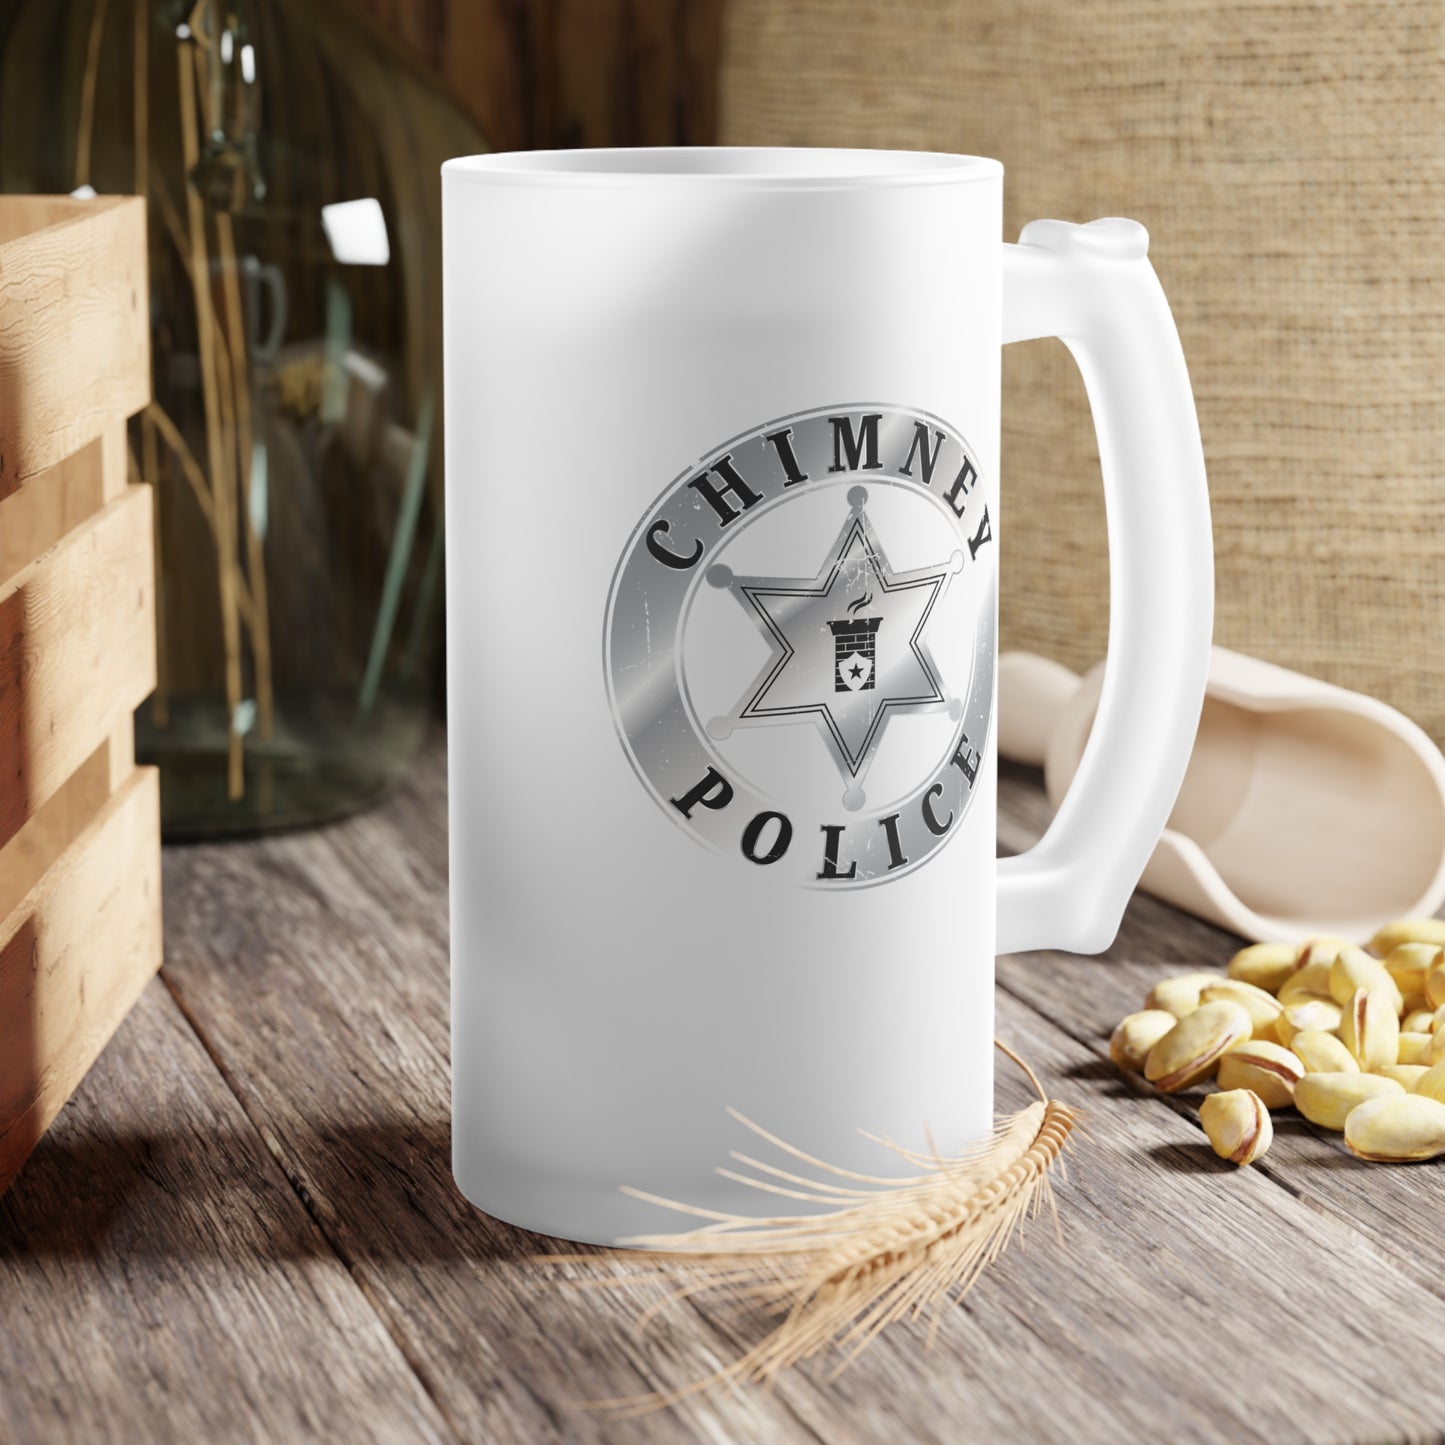 Chimney Police Mug